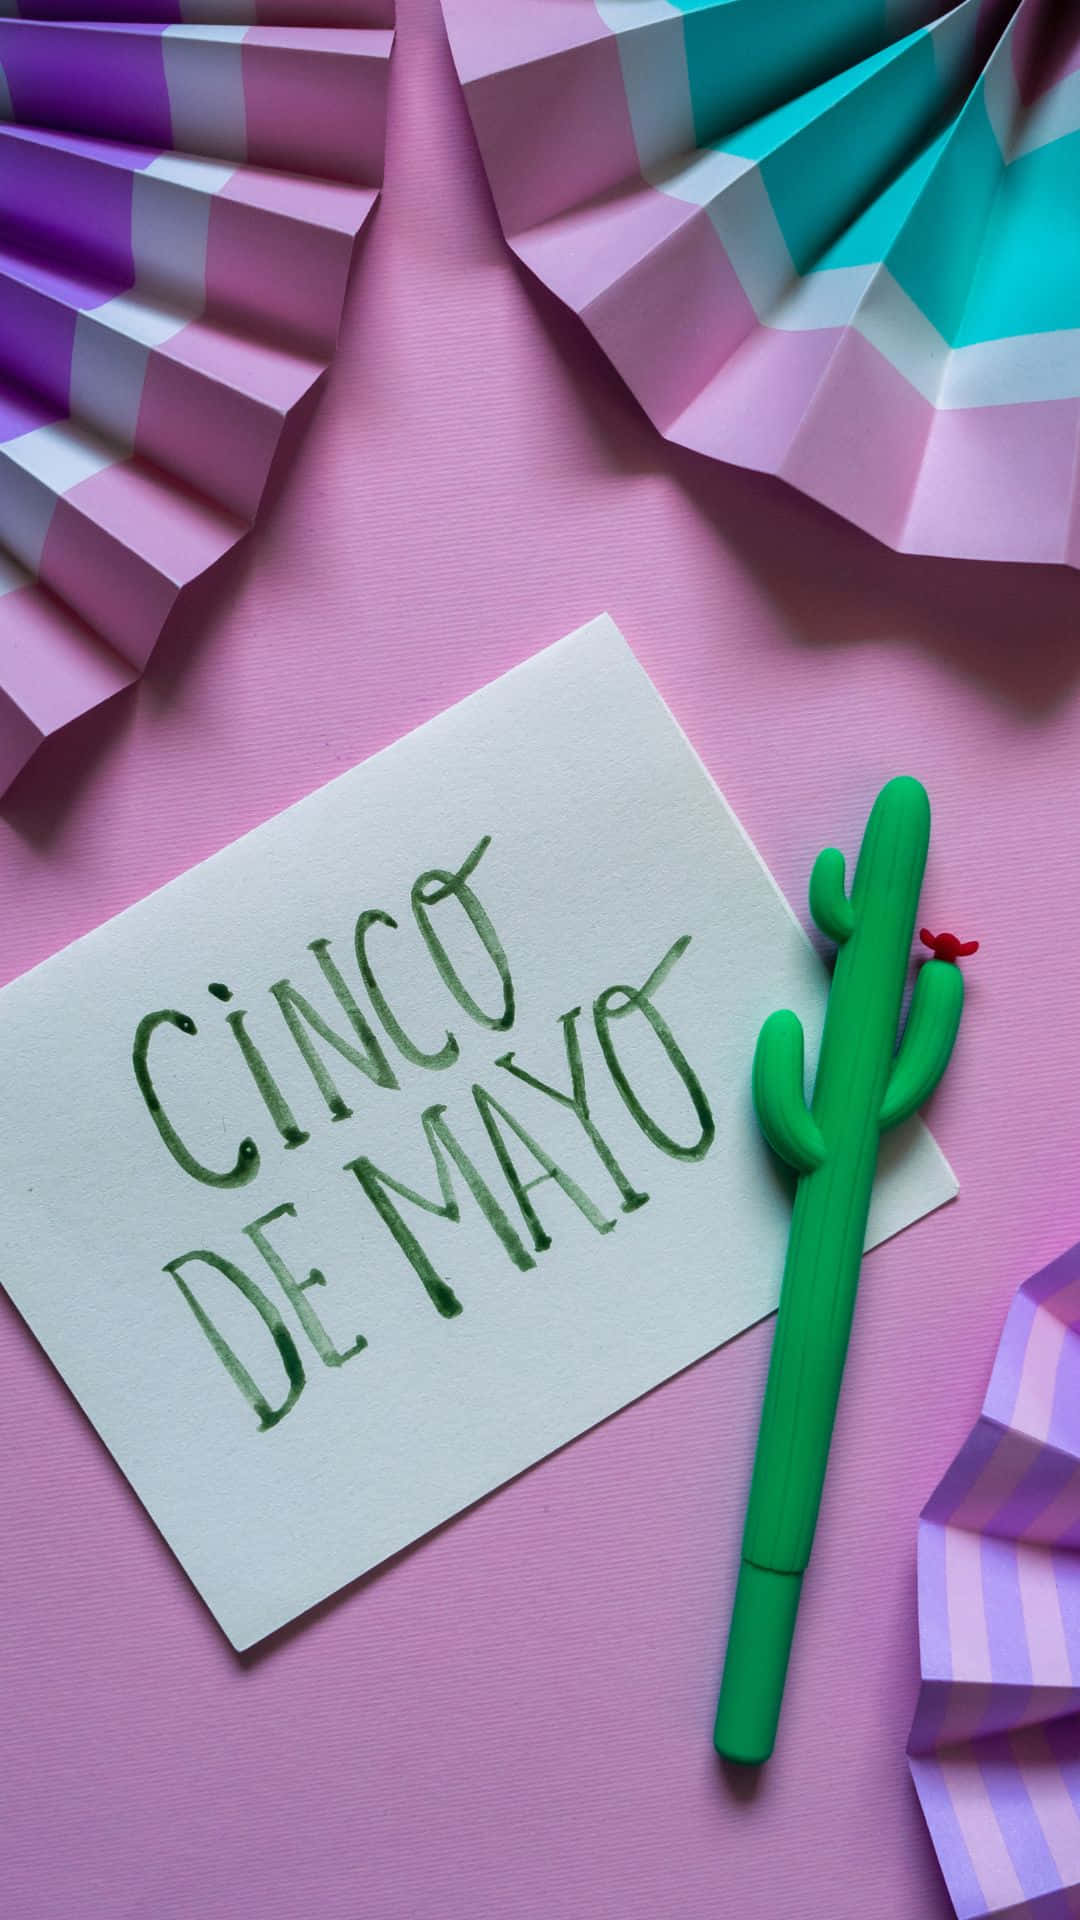 Feiernsie Cinco De Mayo Mit Traditionellem Mexikanischem Essen, Musik Und Getränken. Wallpaper